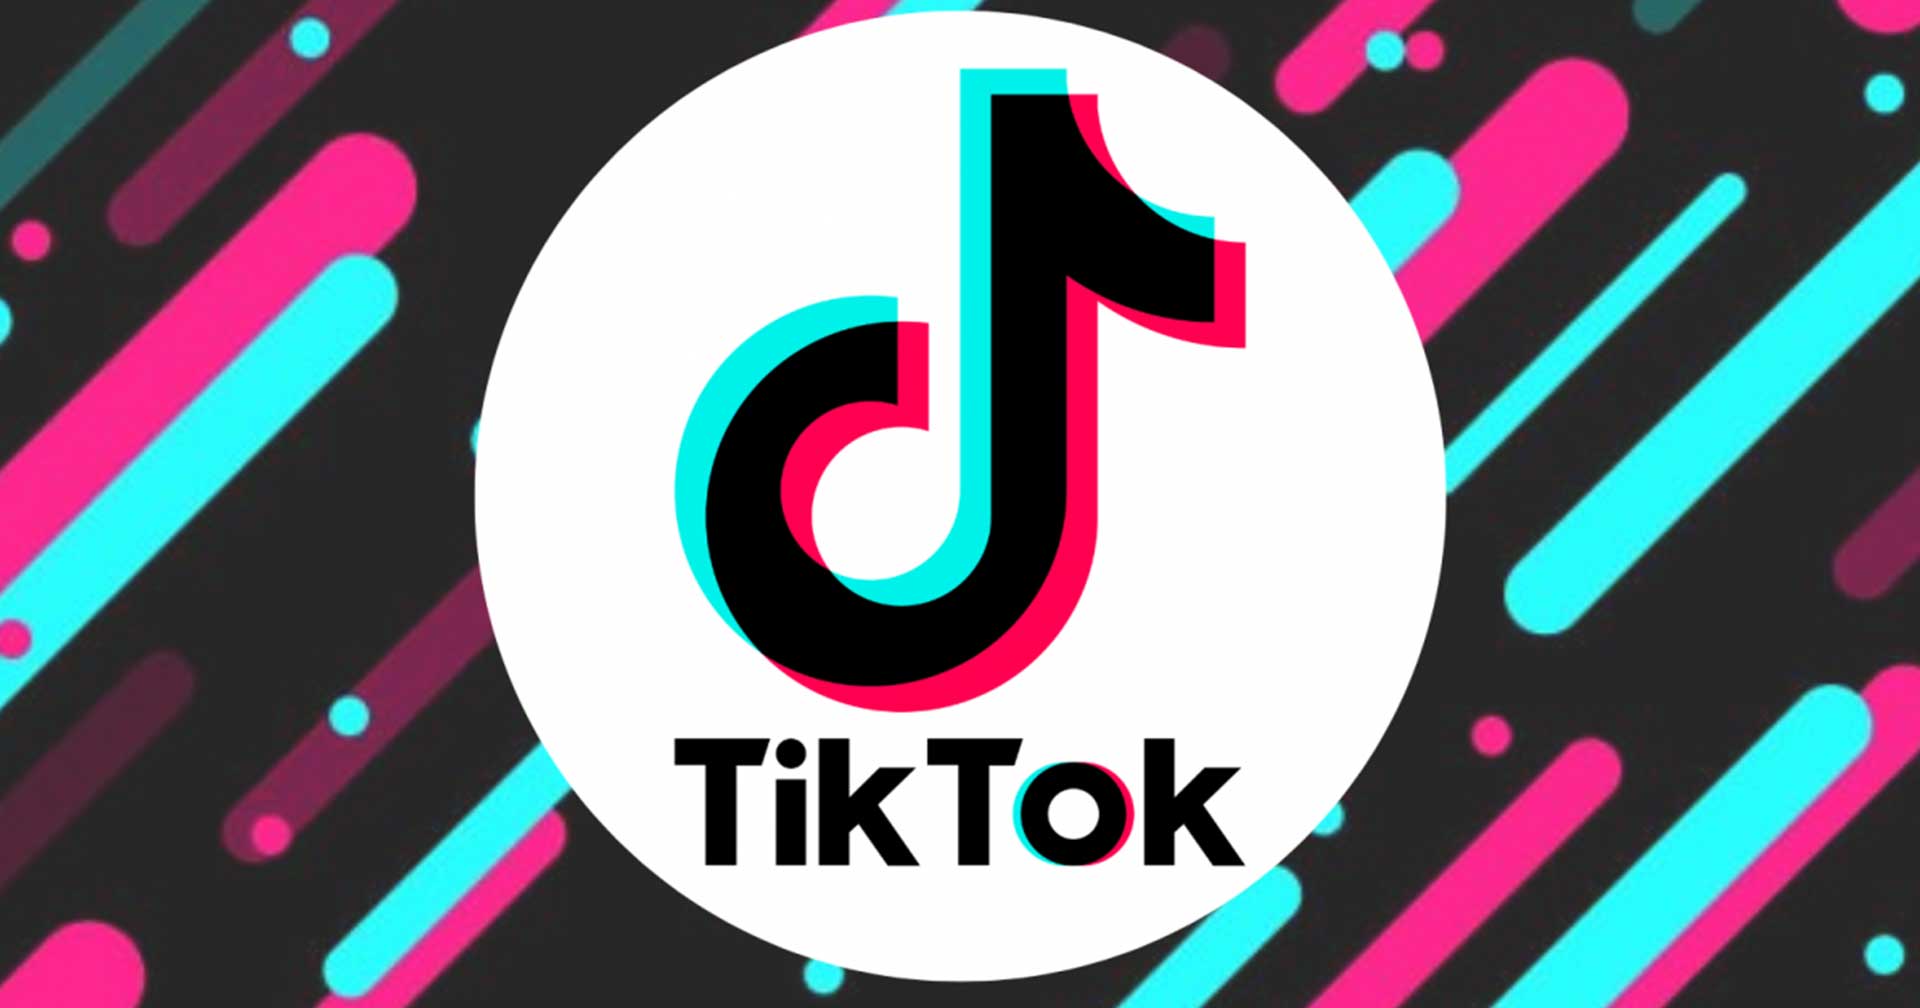 TikTok ปรับปรุงเงื่อนไขผู้สร้างเอฟเฟกต์ที่มีสิทธิได้รับเงินสนับสนุน